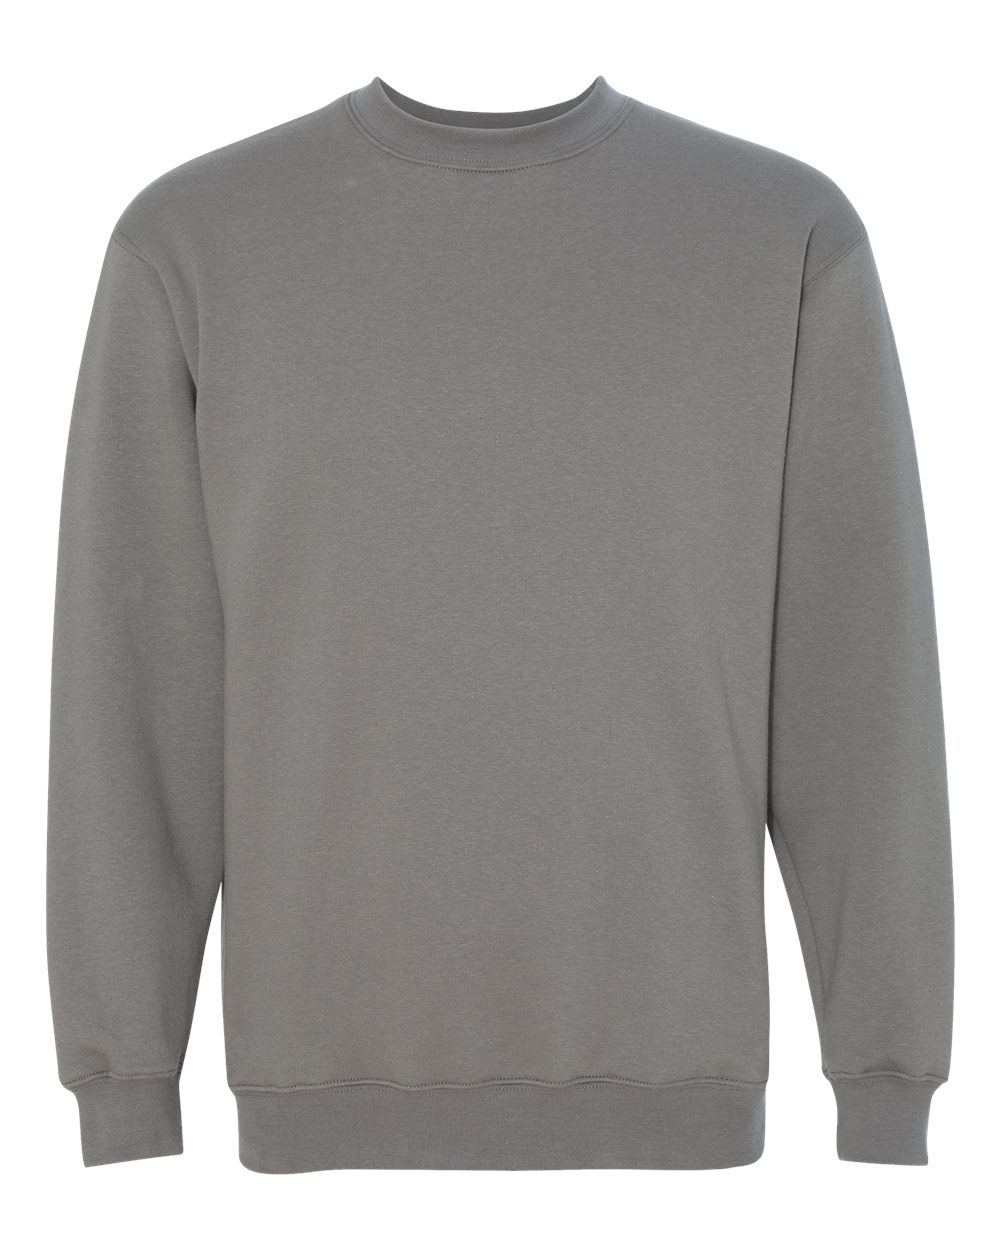 Bayside Crewneck Sweatshirt USA Made - SHIRT PRINTING 4U